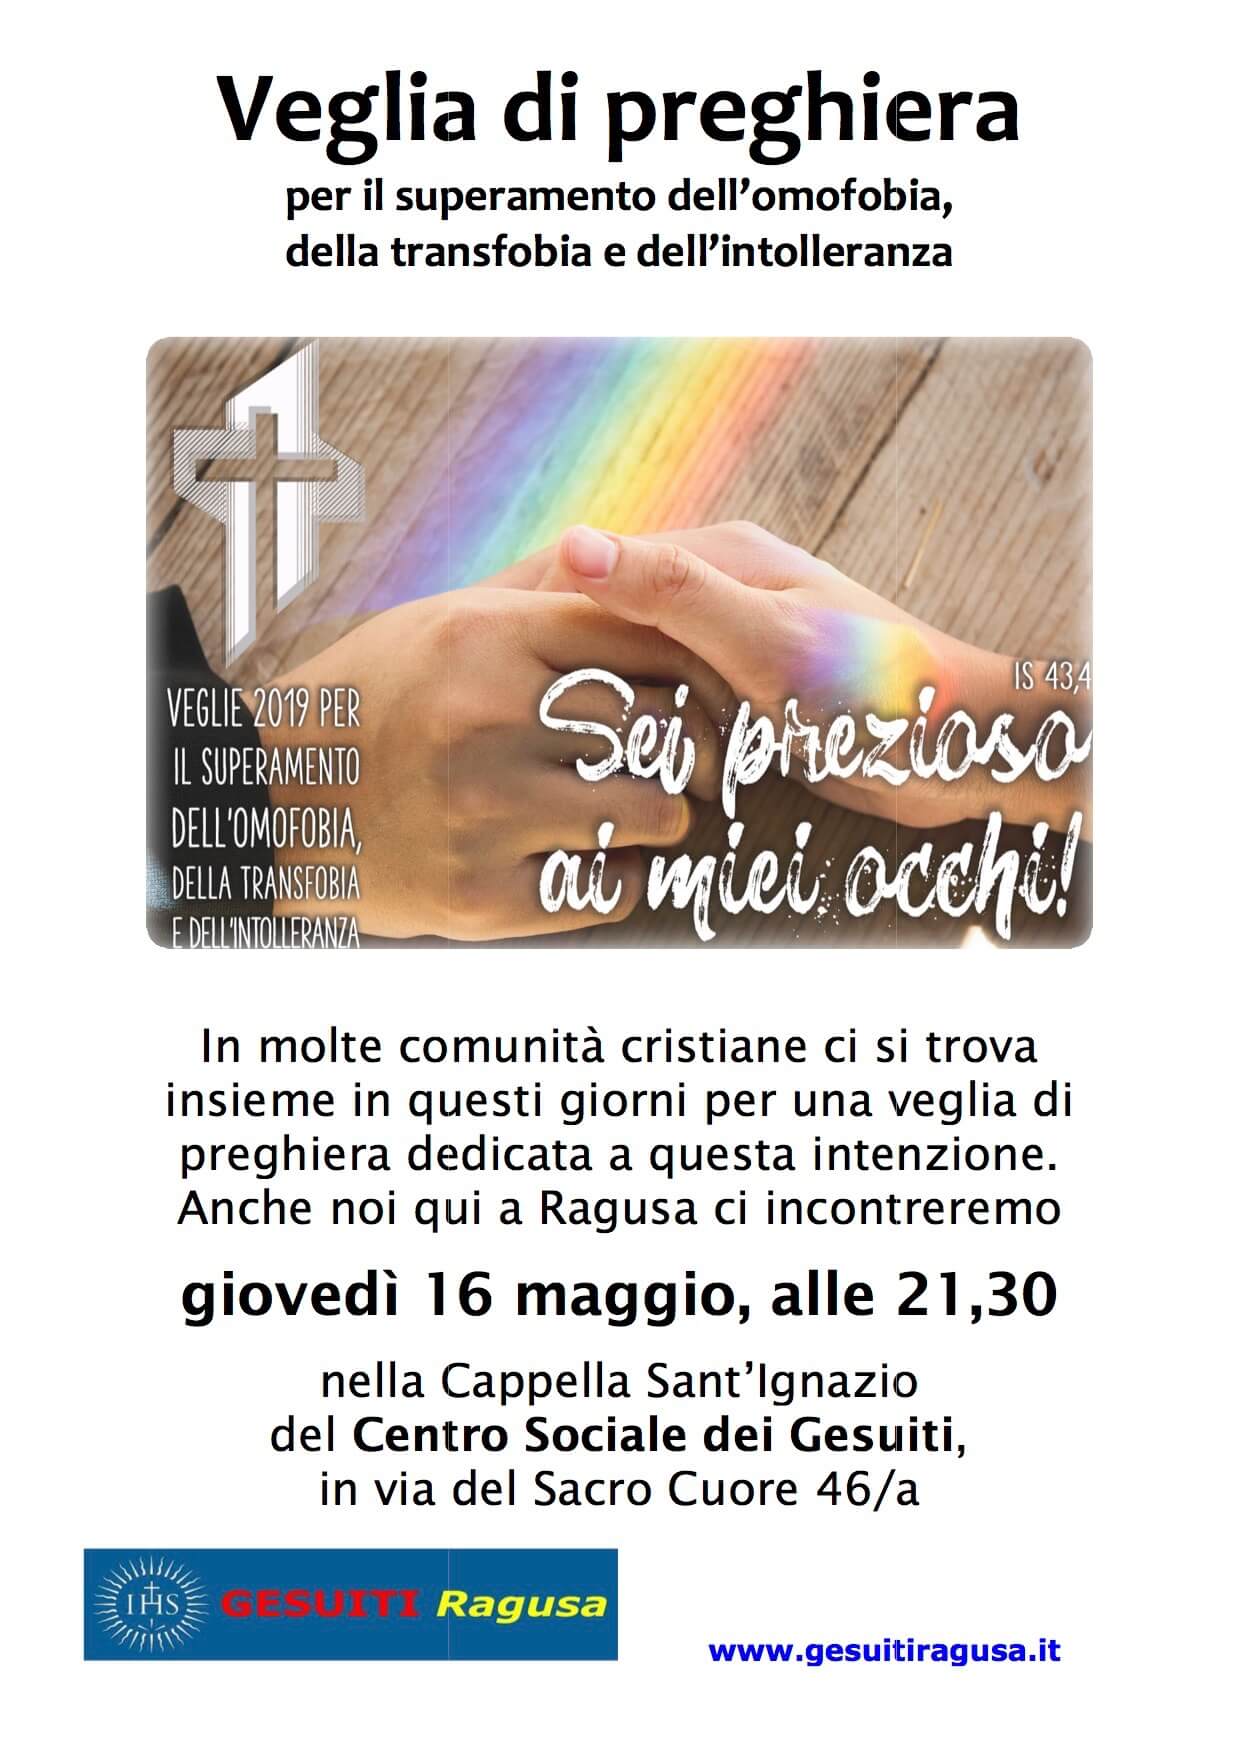 Ragusa, veglia di preghiera contro l'omotransfobia - Ragusa veglia di preghiera per guarire dallomo transfobia - Gay.it